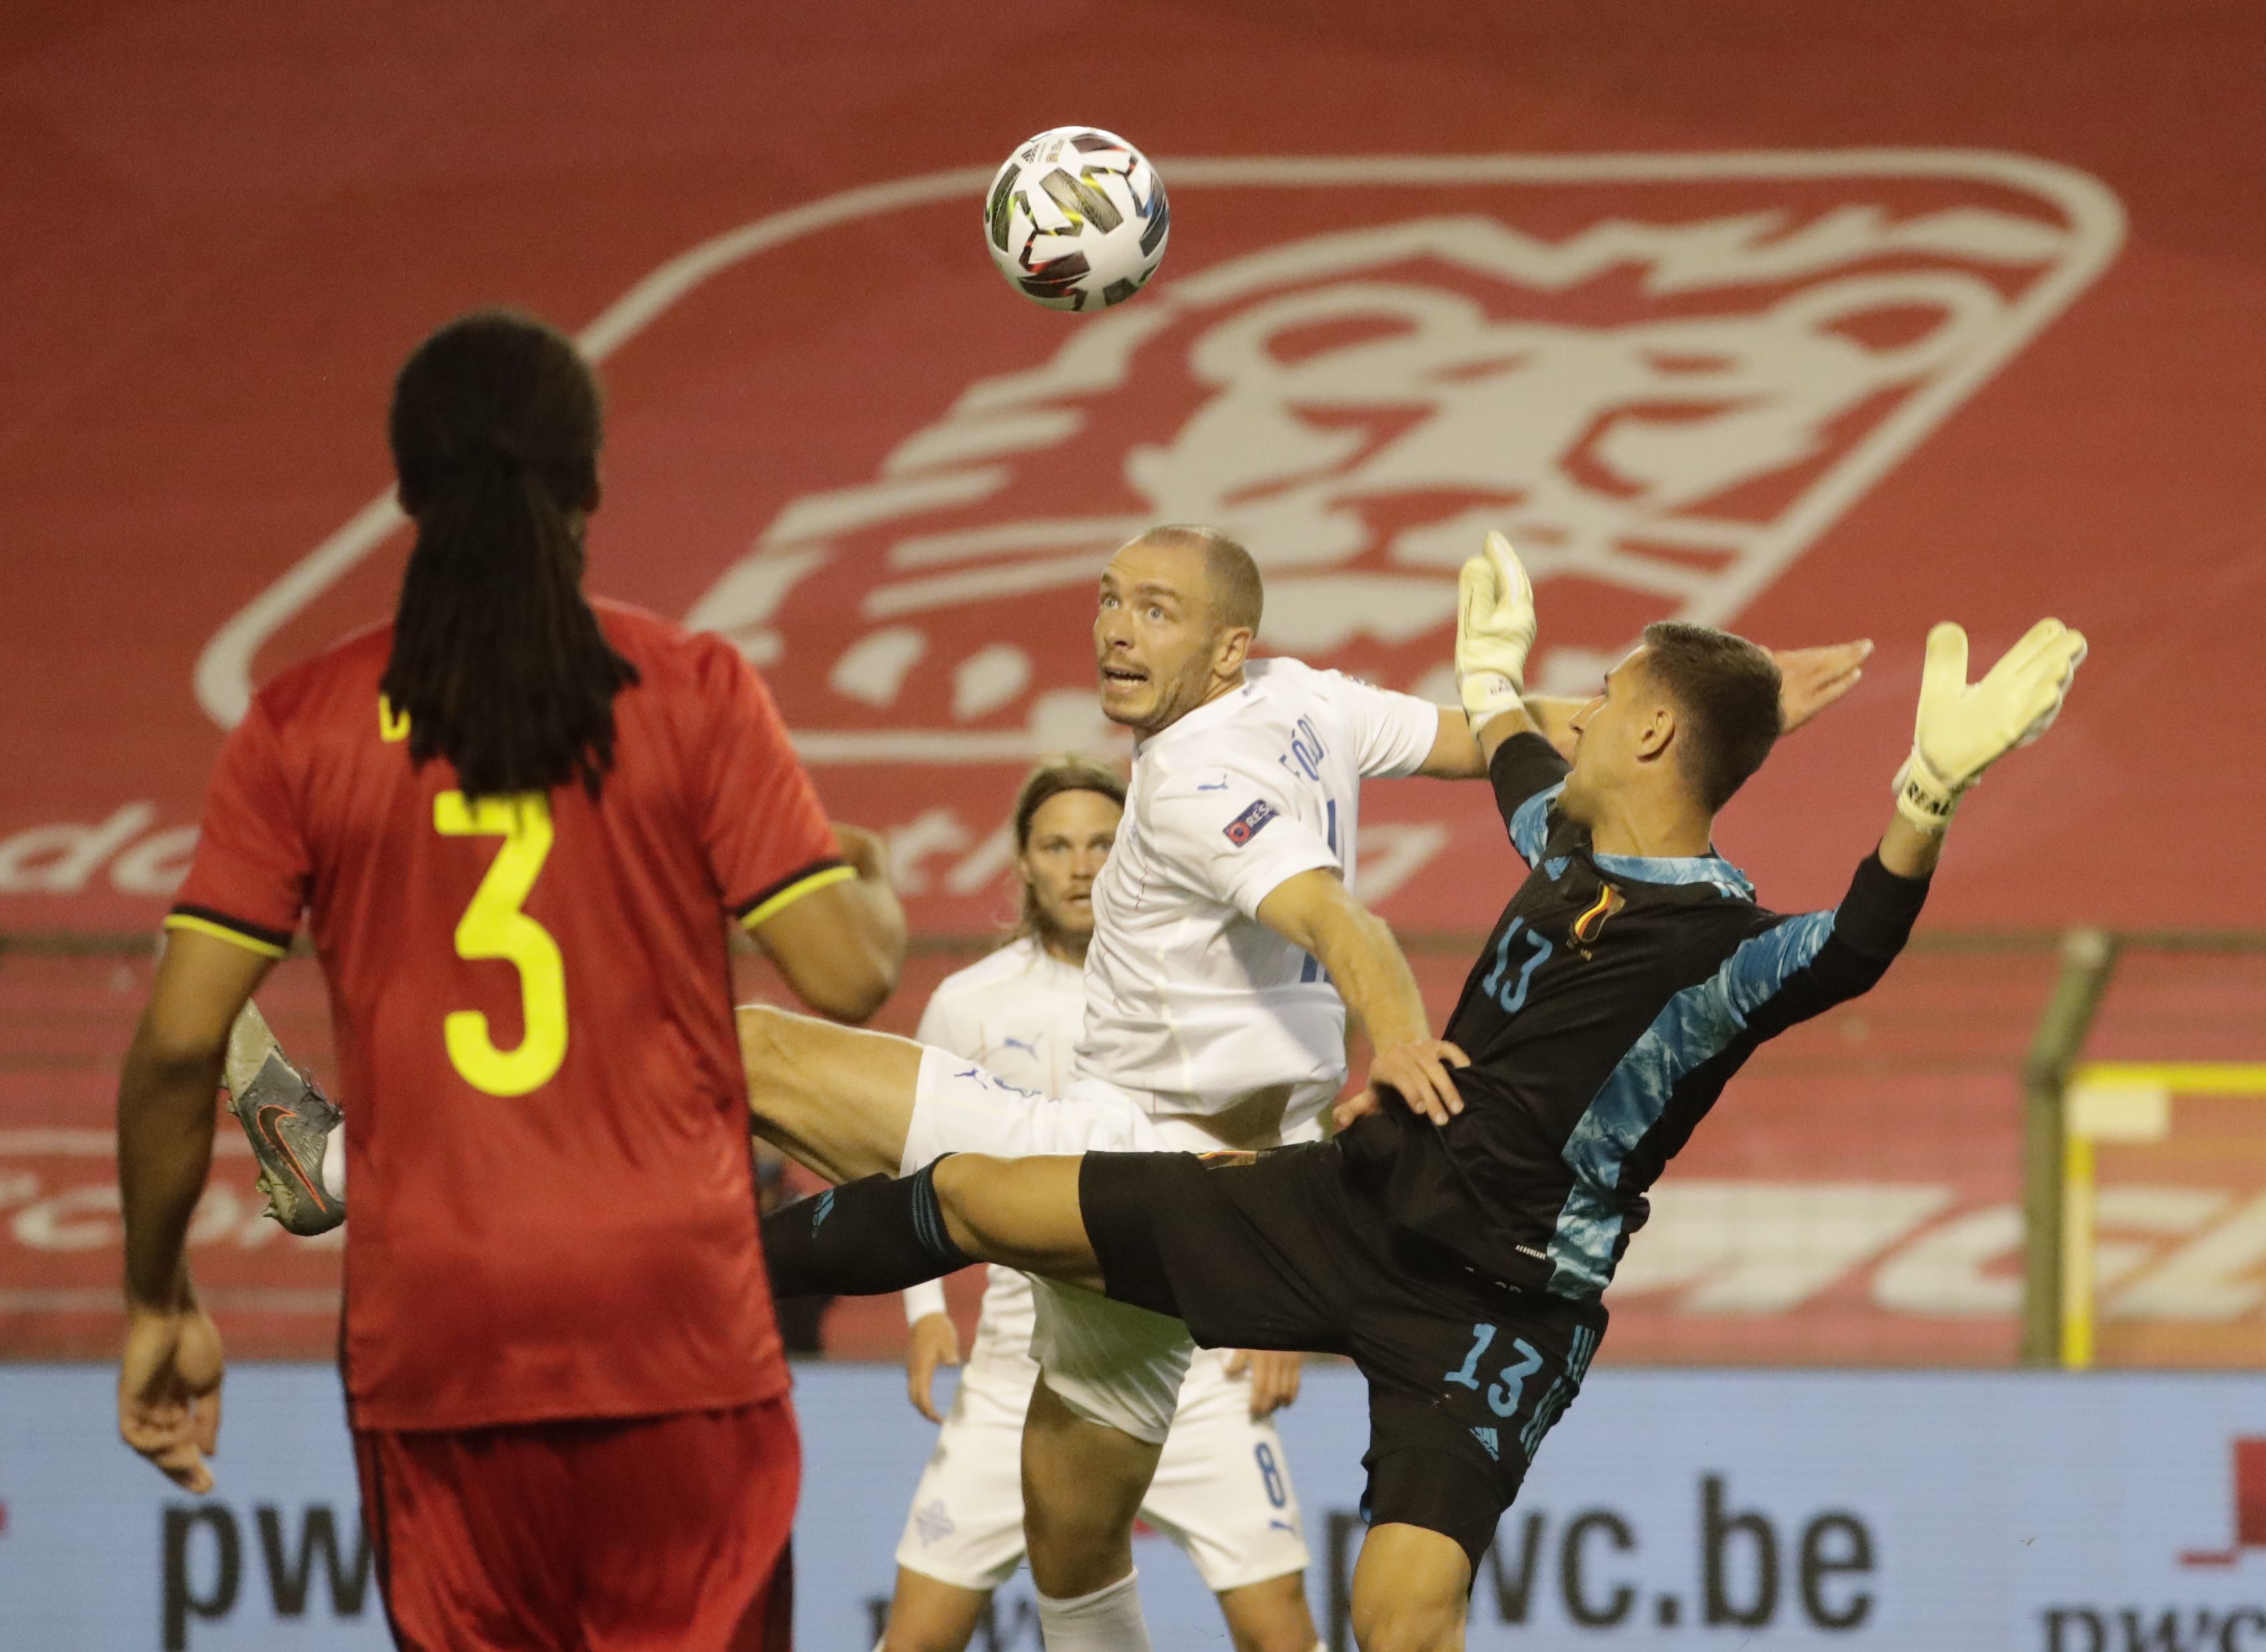 Emil Hallfredsson küzd a labdáért a belgák elleni Nemzetek Ligája meccsen. / Fotó: EPA/Olivier Hoslet.